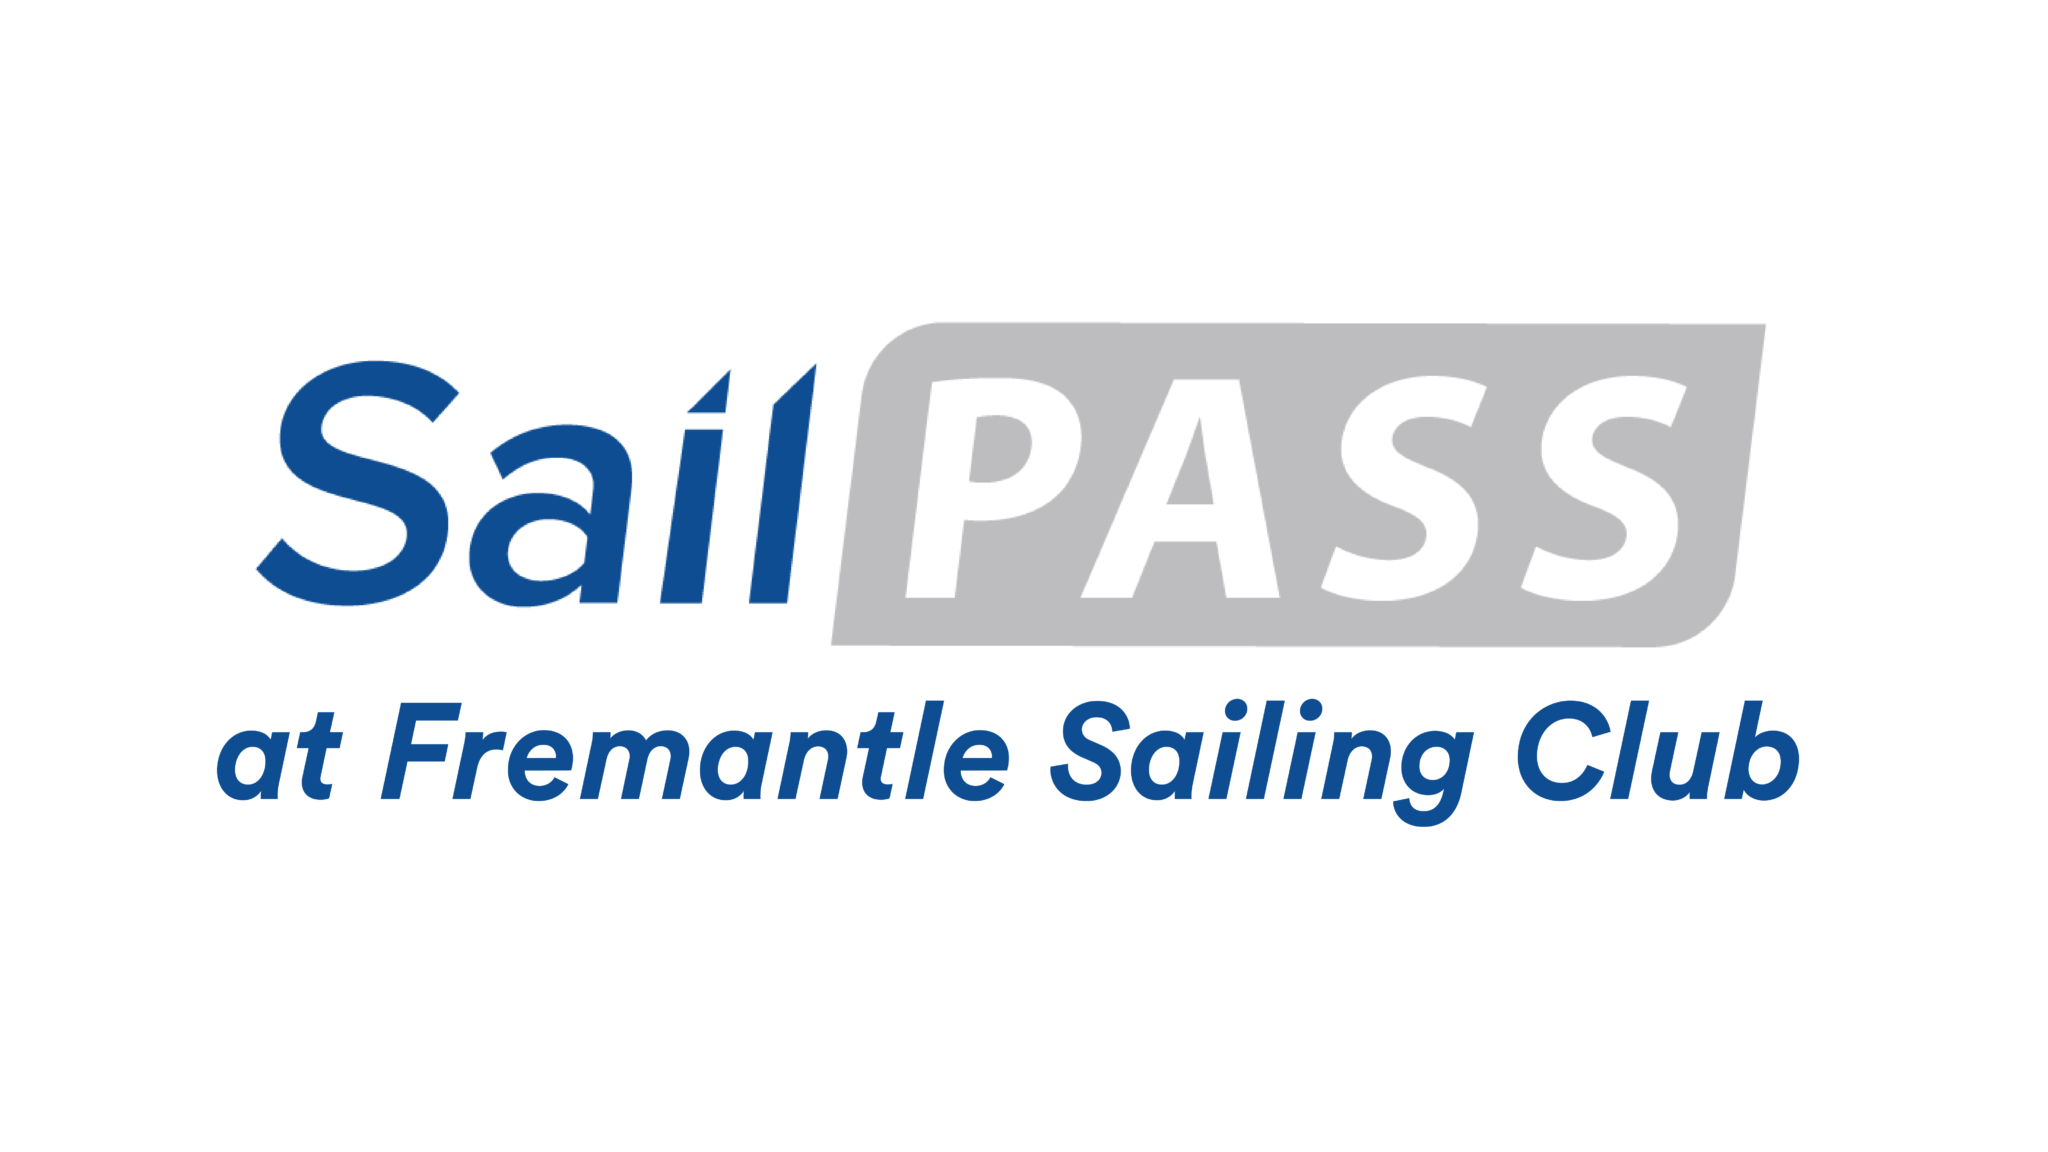 SailPass logo at Fremantle Sailing Club